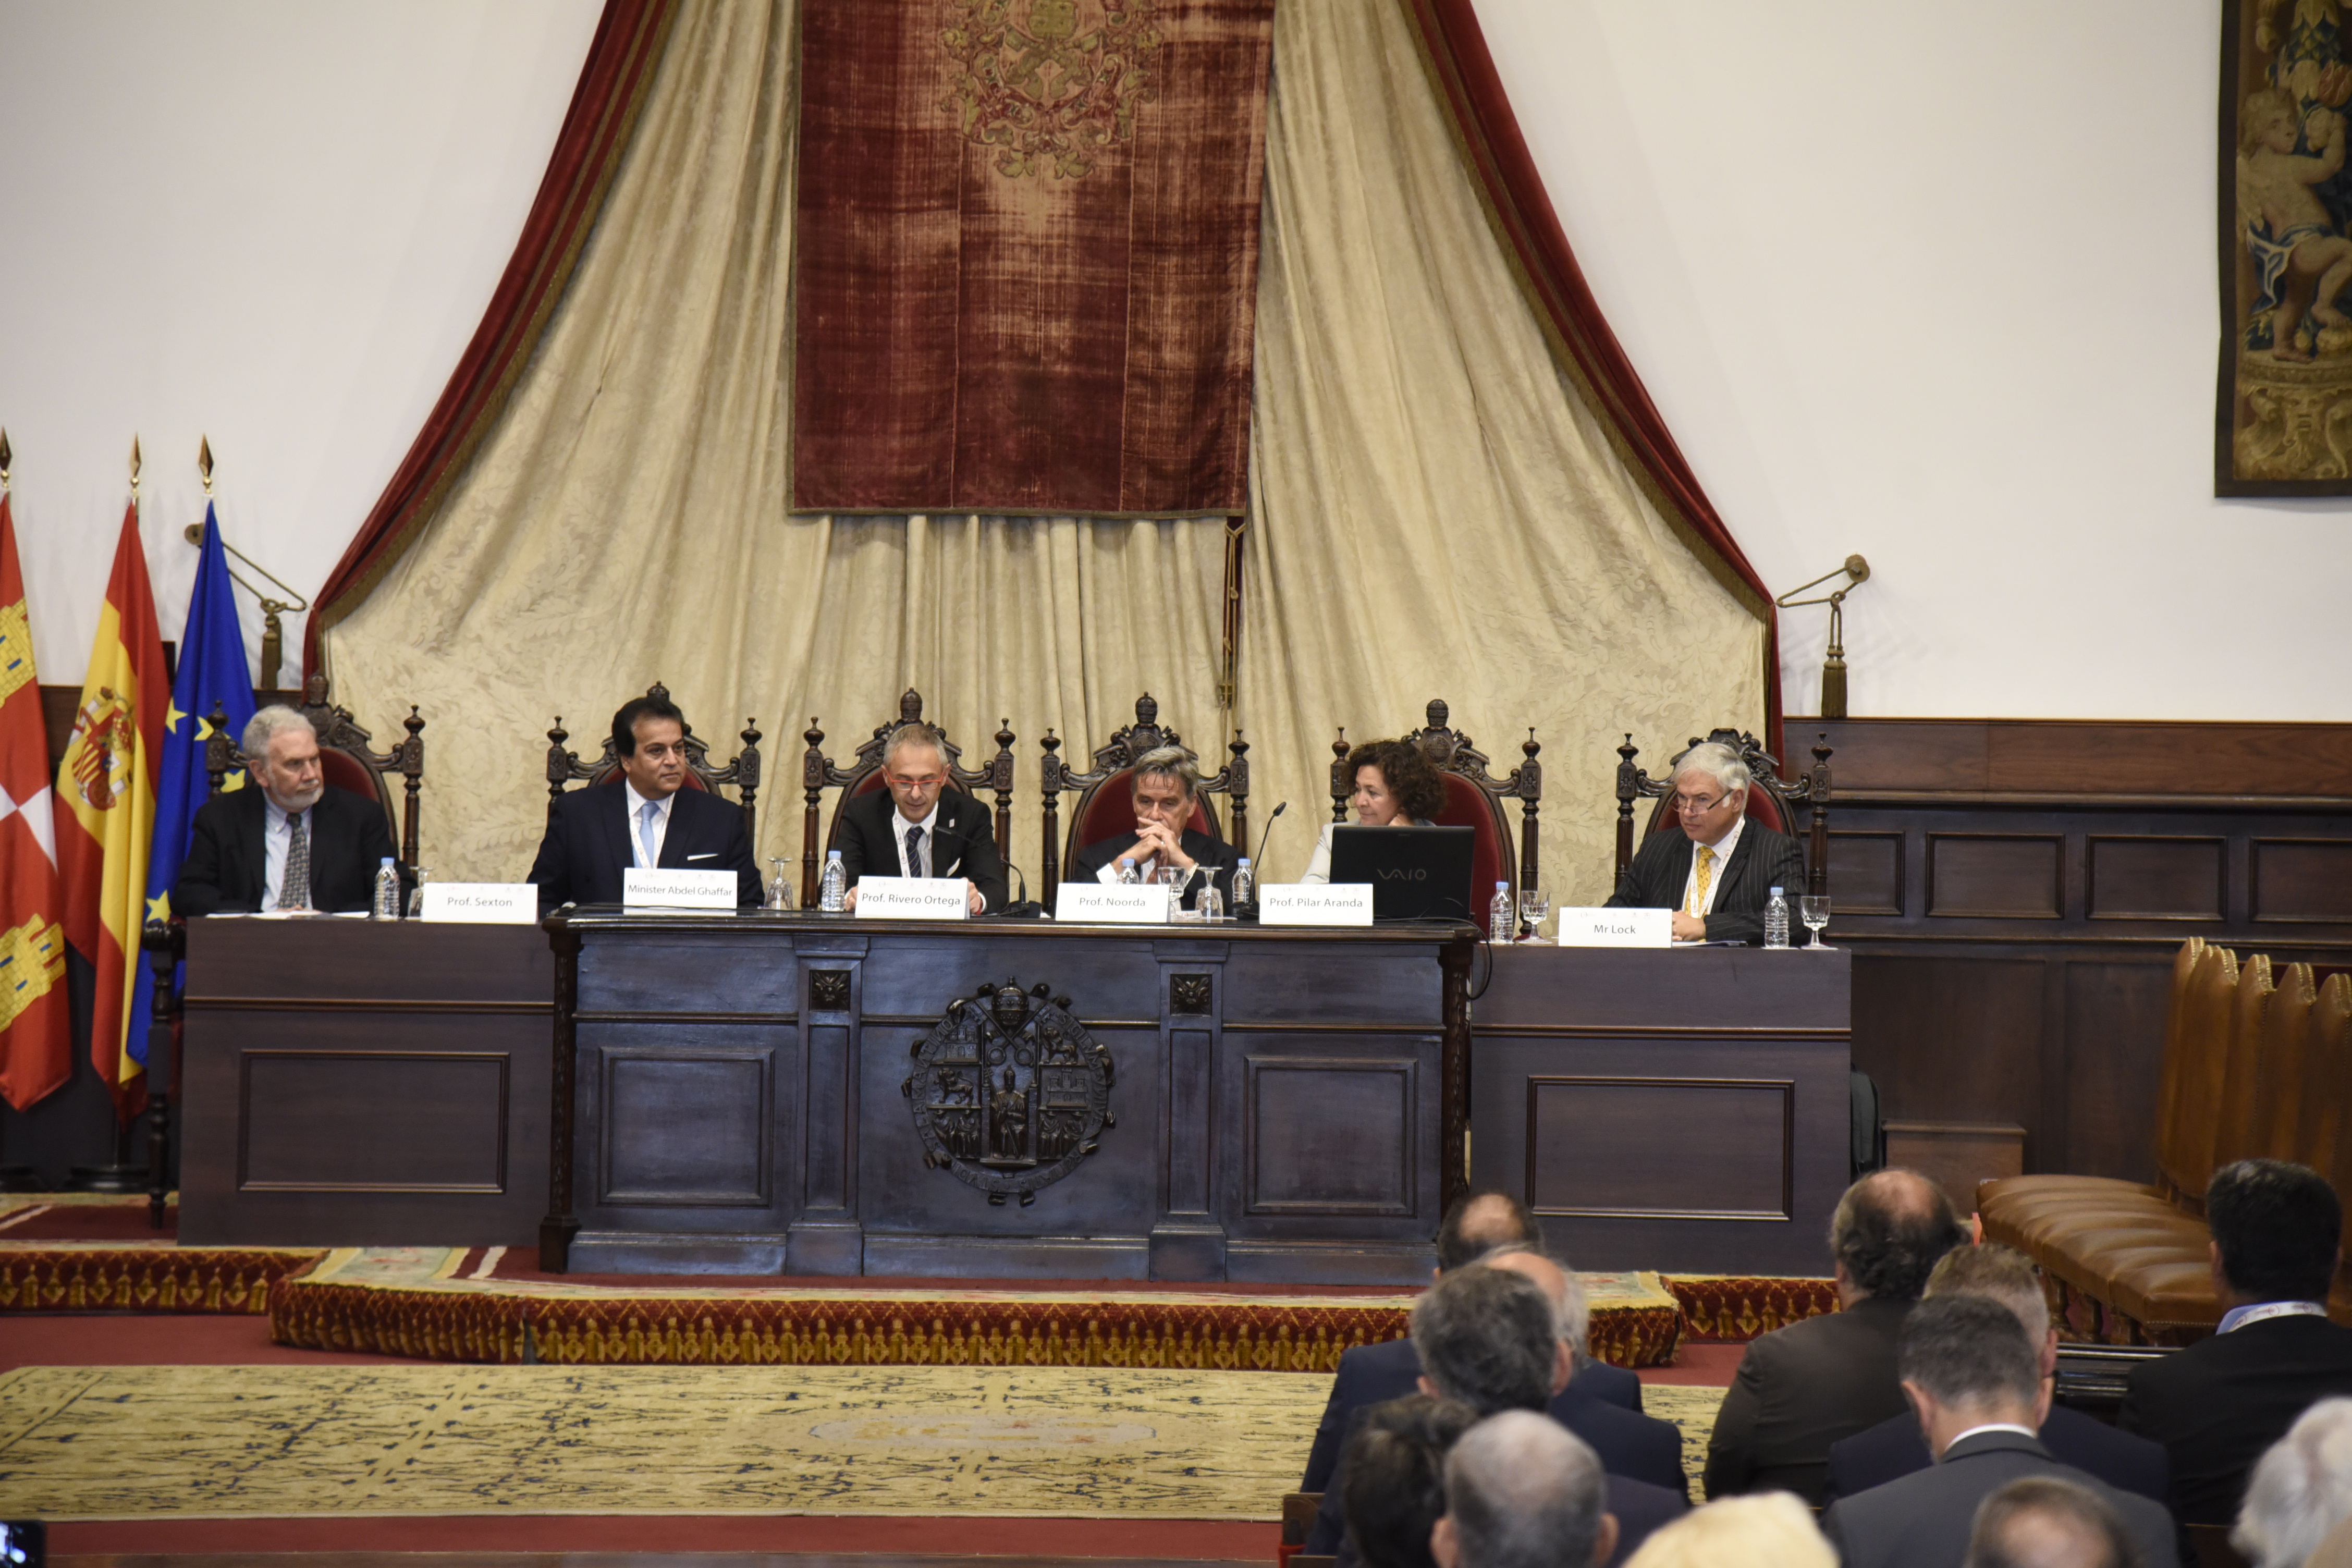 La Universidad de Salamanca acoge la XXX Asamblea de la Magna Charta Universitatum, la cuarta de las grandes reuniones institucionales del VIII Centenario